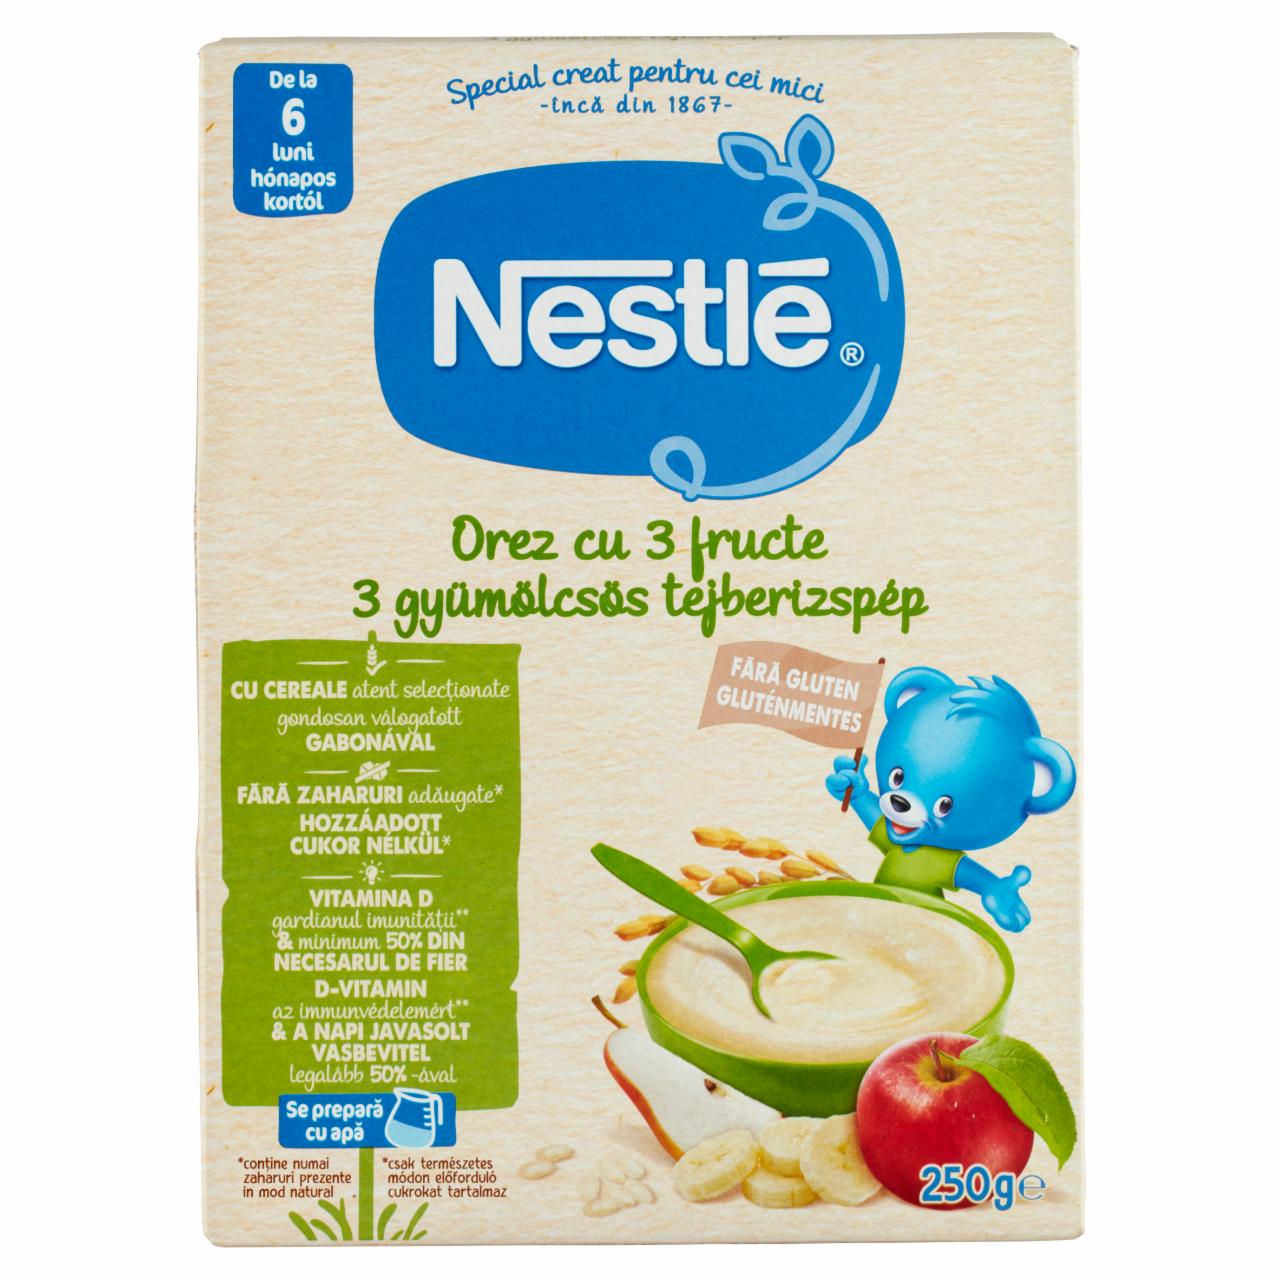 Képek - Nestlé 3 gyümölcsös tejberizspép 6 hónapos kortól 250 g